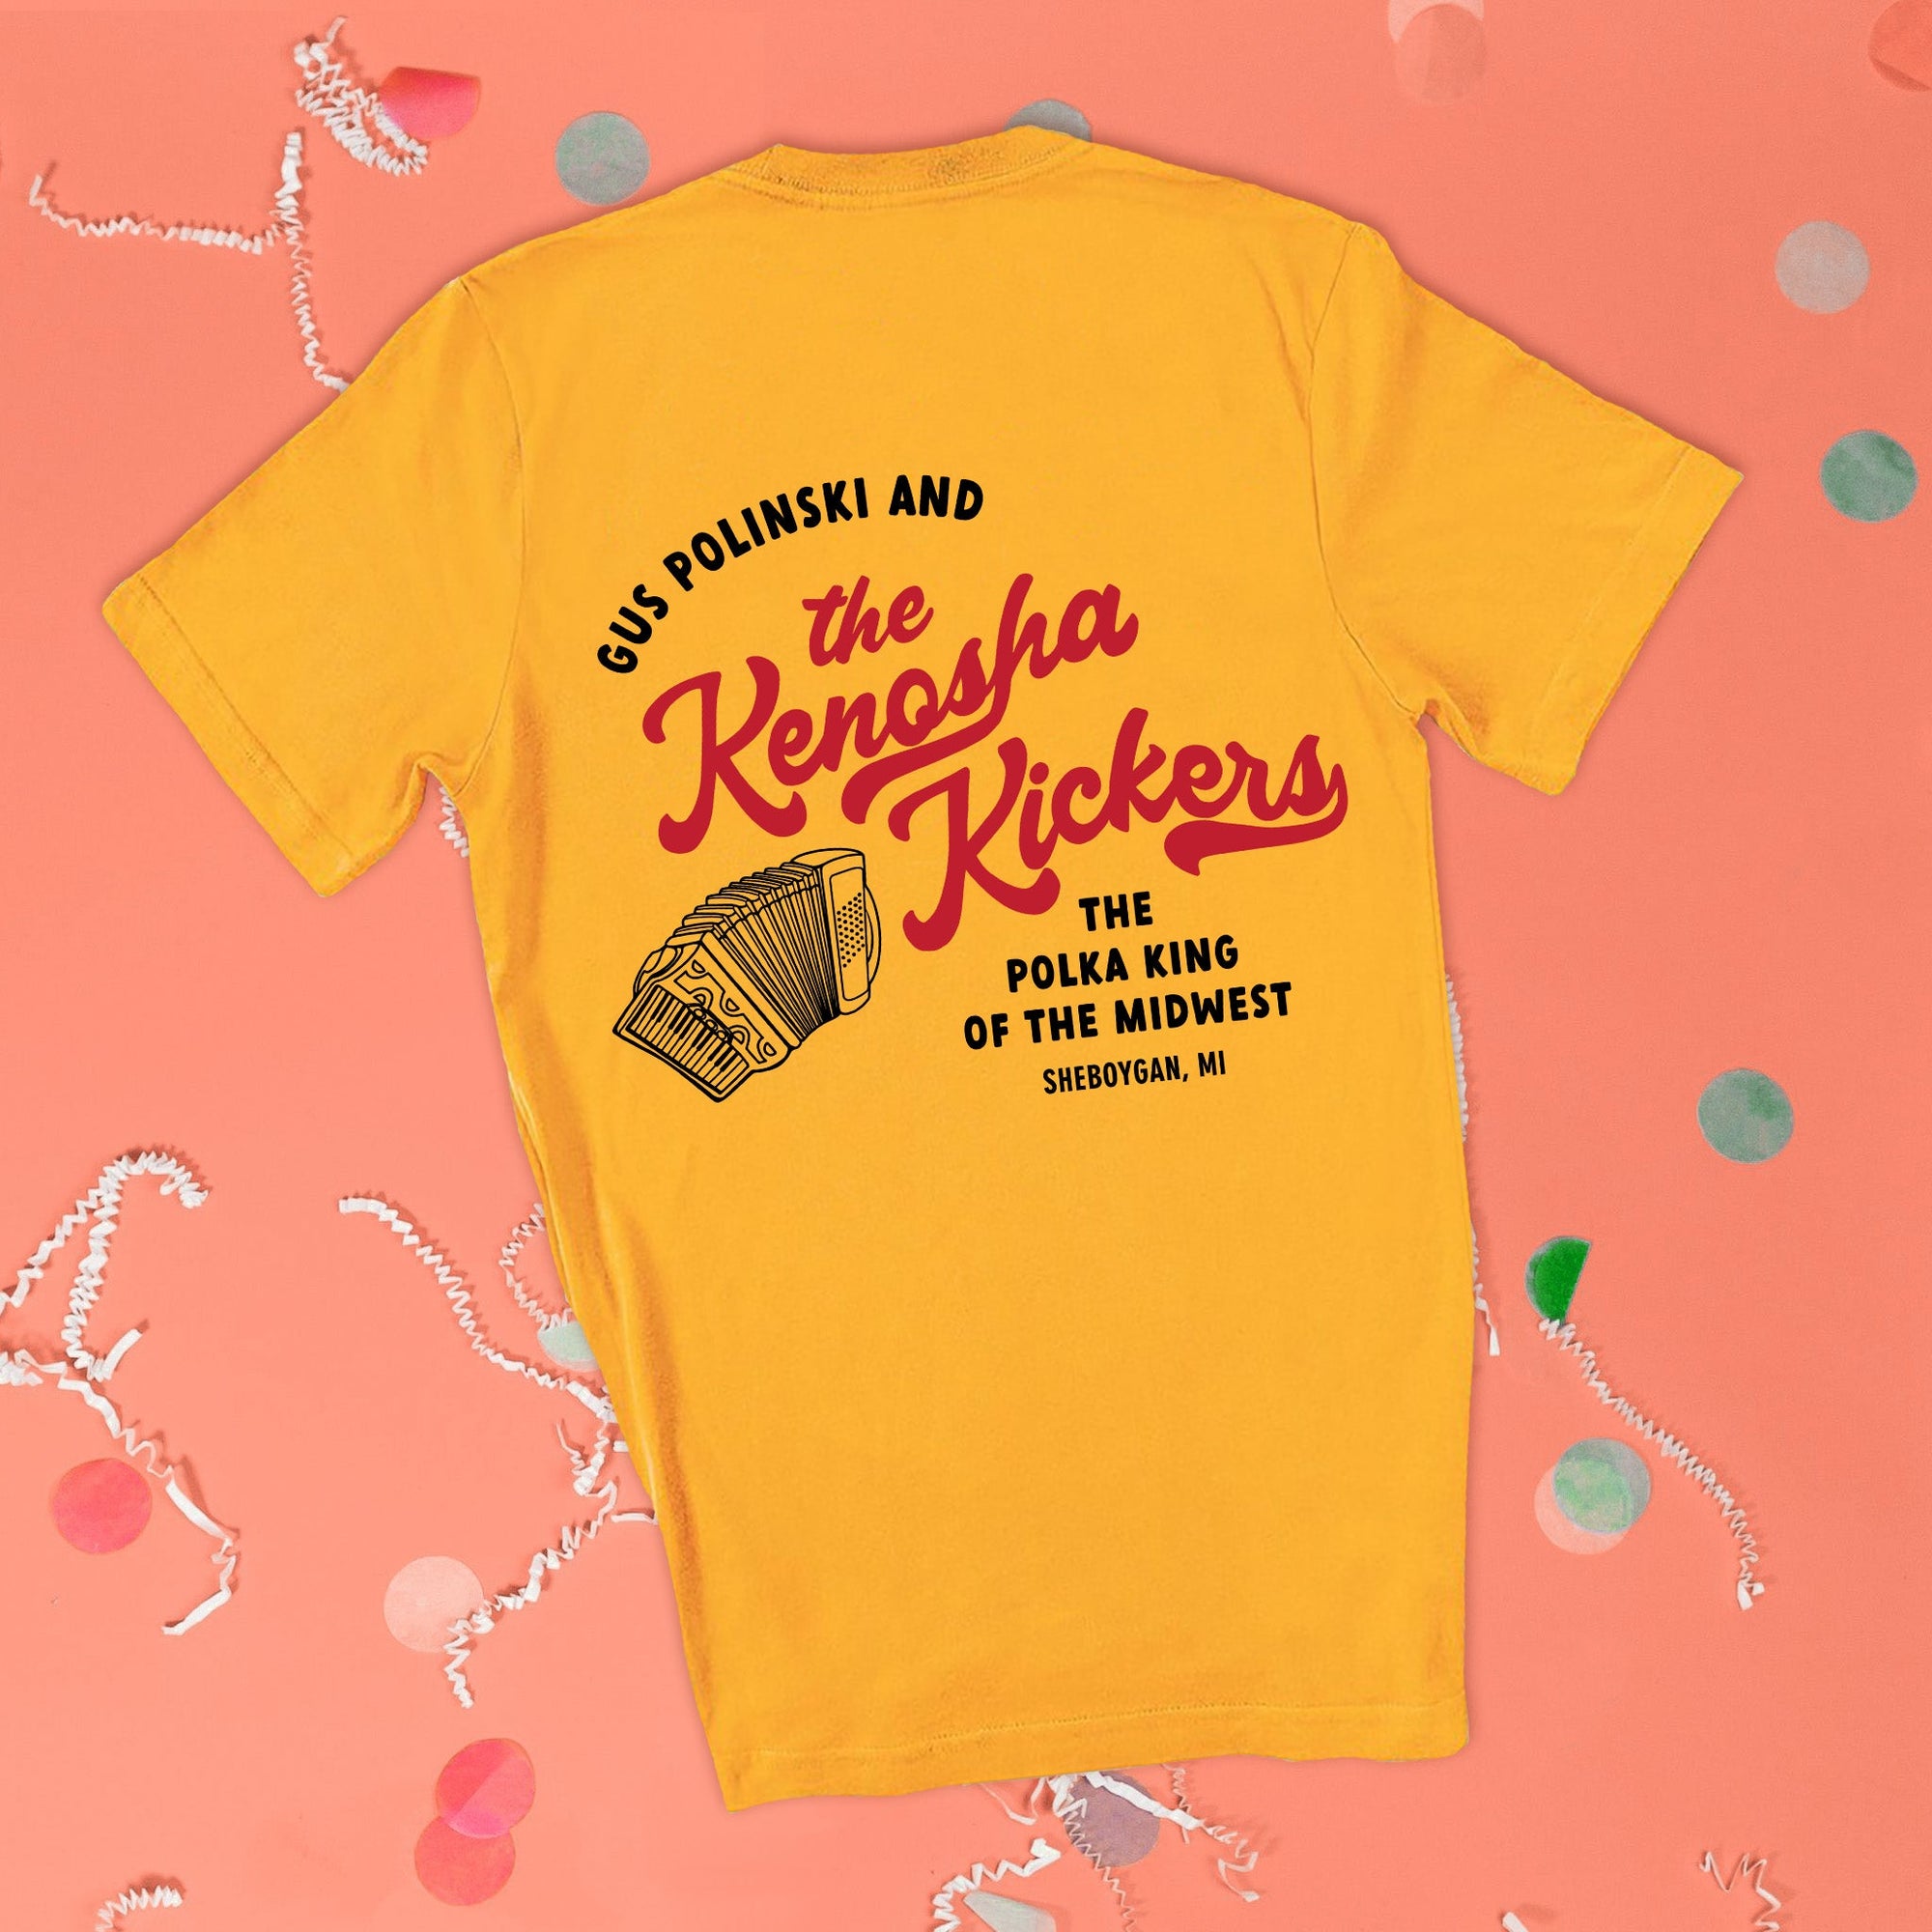 Gus Kenosha Kicker's Home Alone Inspired Holiday T-Shirt